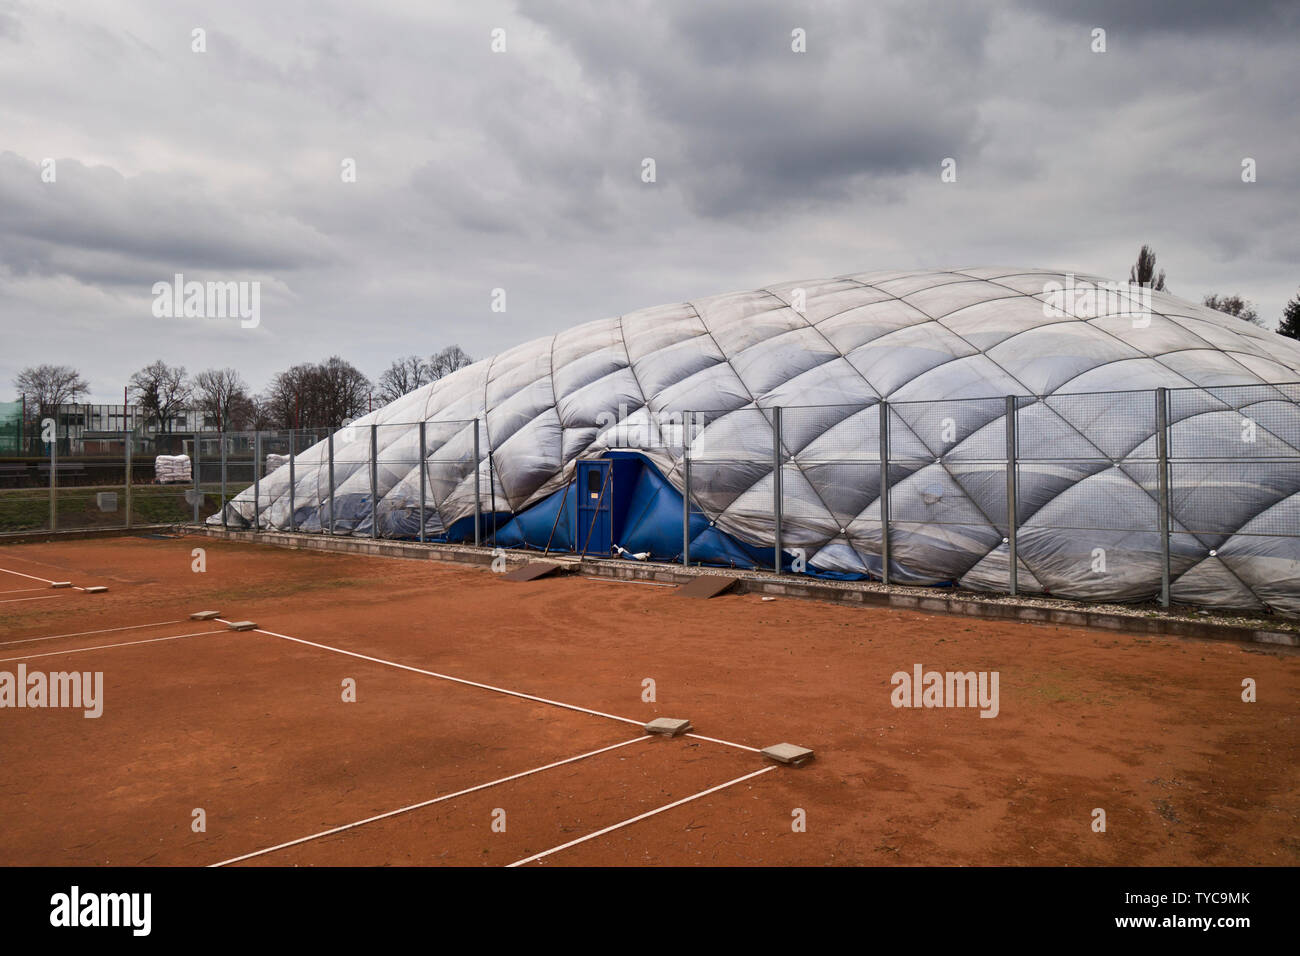 Cupola di aria per sport al coperto e un campo da tennis presso un centro sportivo Foto Stock